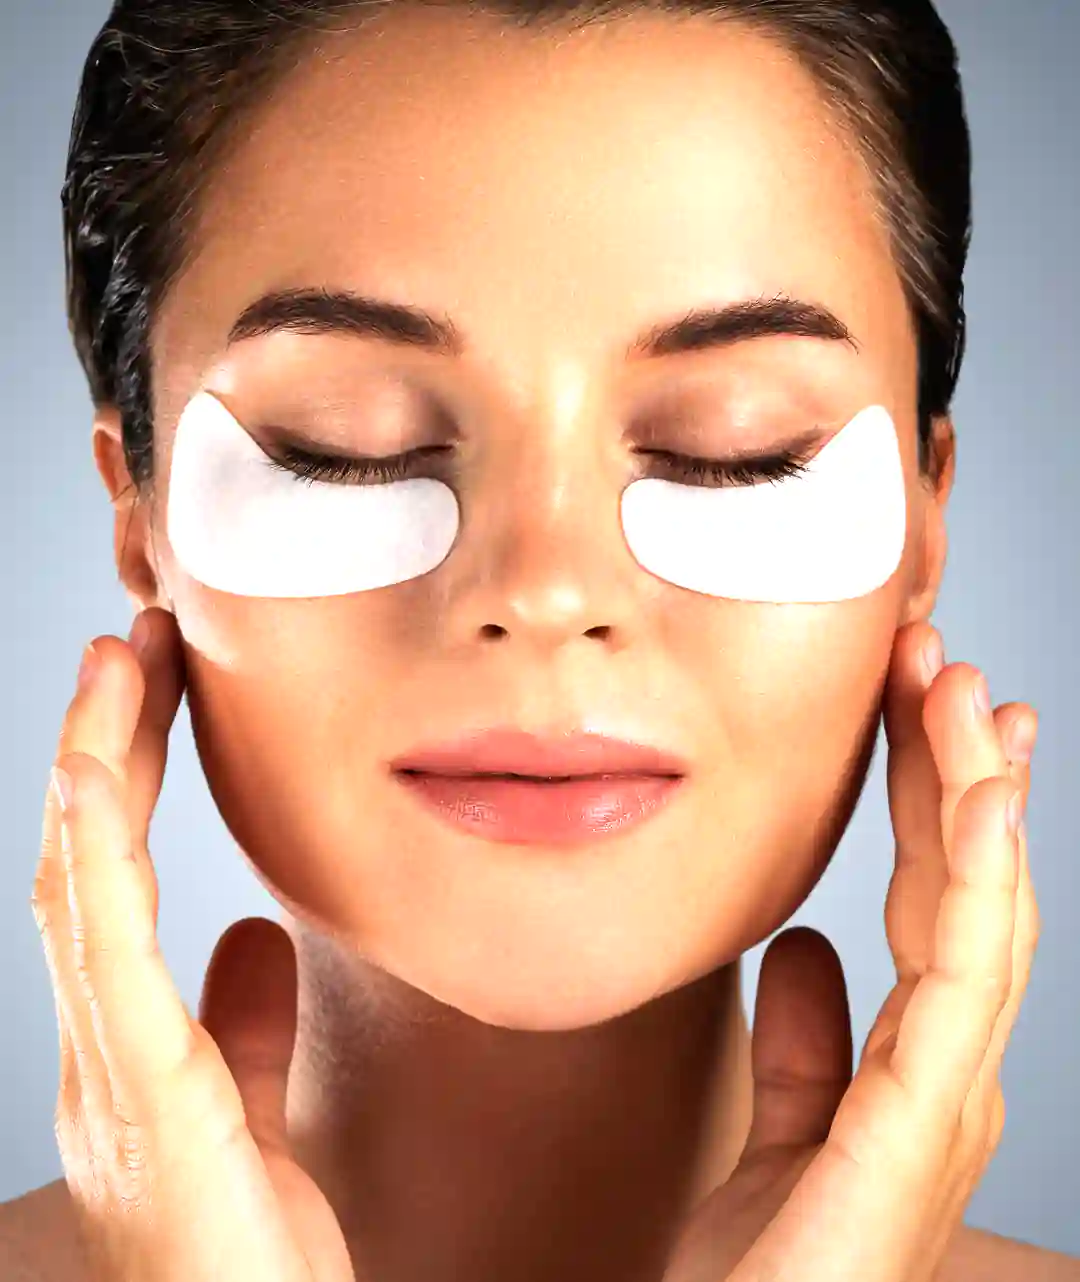 Under-eye bags treatments